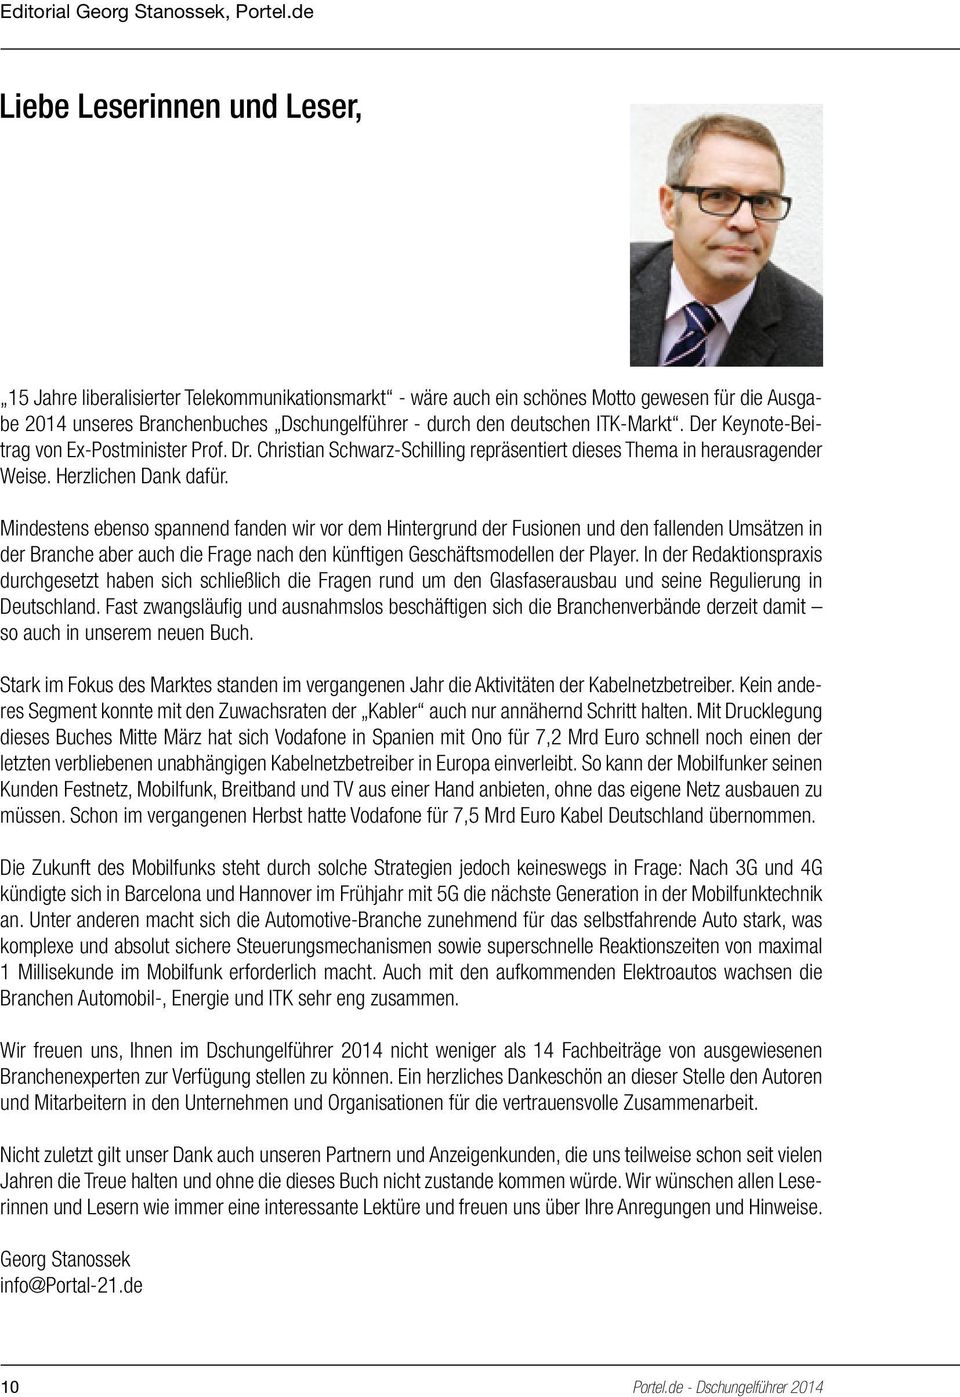 ITK-Markt. Der Keynote-Beitrag von Ex-Postminister Prof. Dr. Christian Schwarz-Schilling repräsentiert dieses Thema in herausragender Weise. Herzlichen Dank dafür.